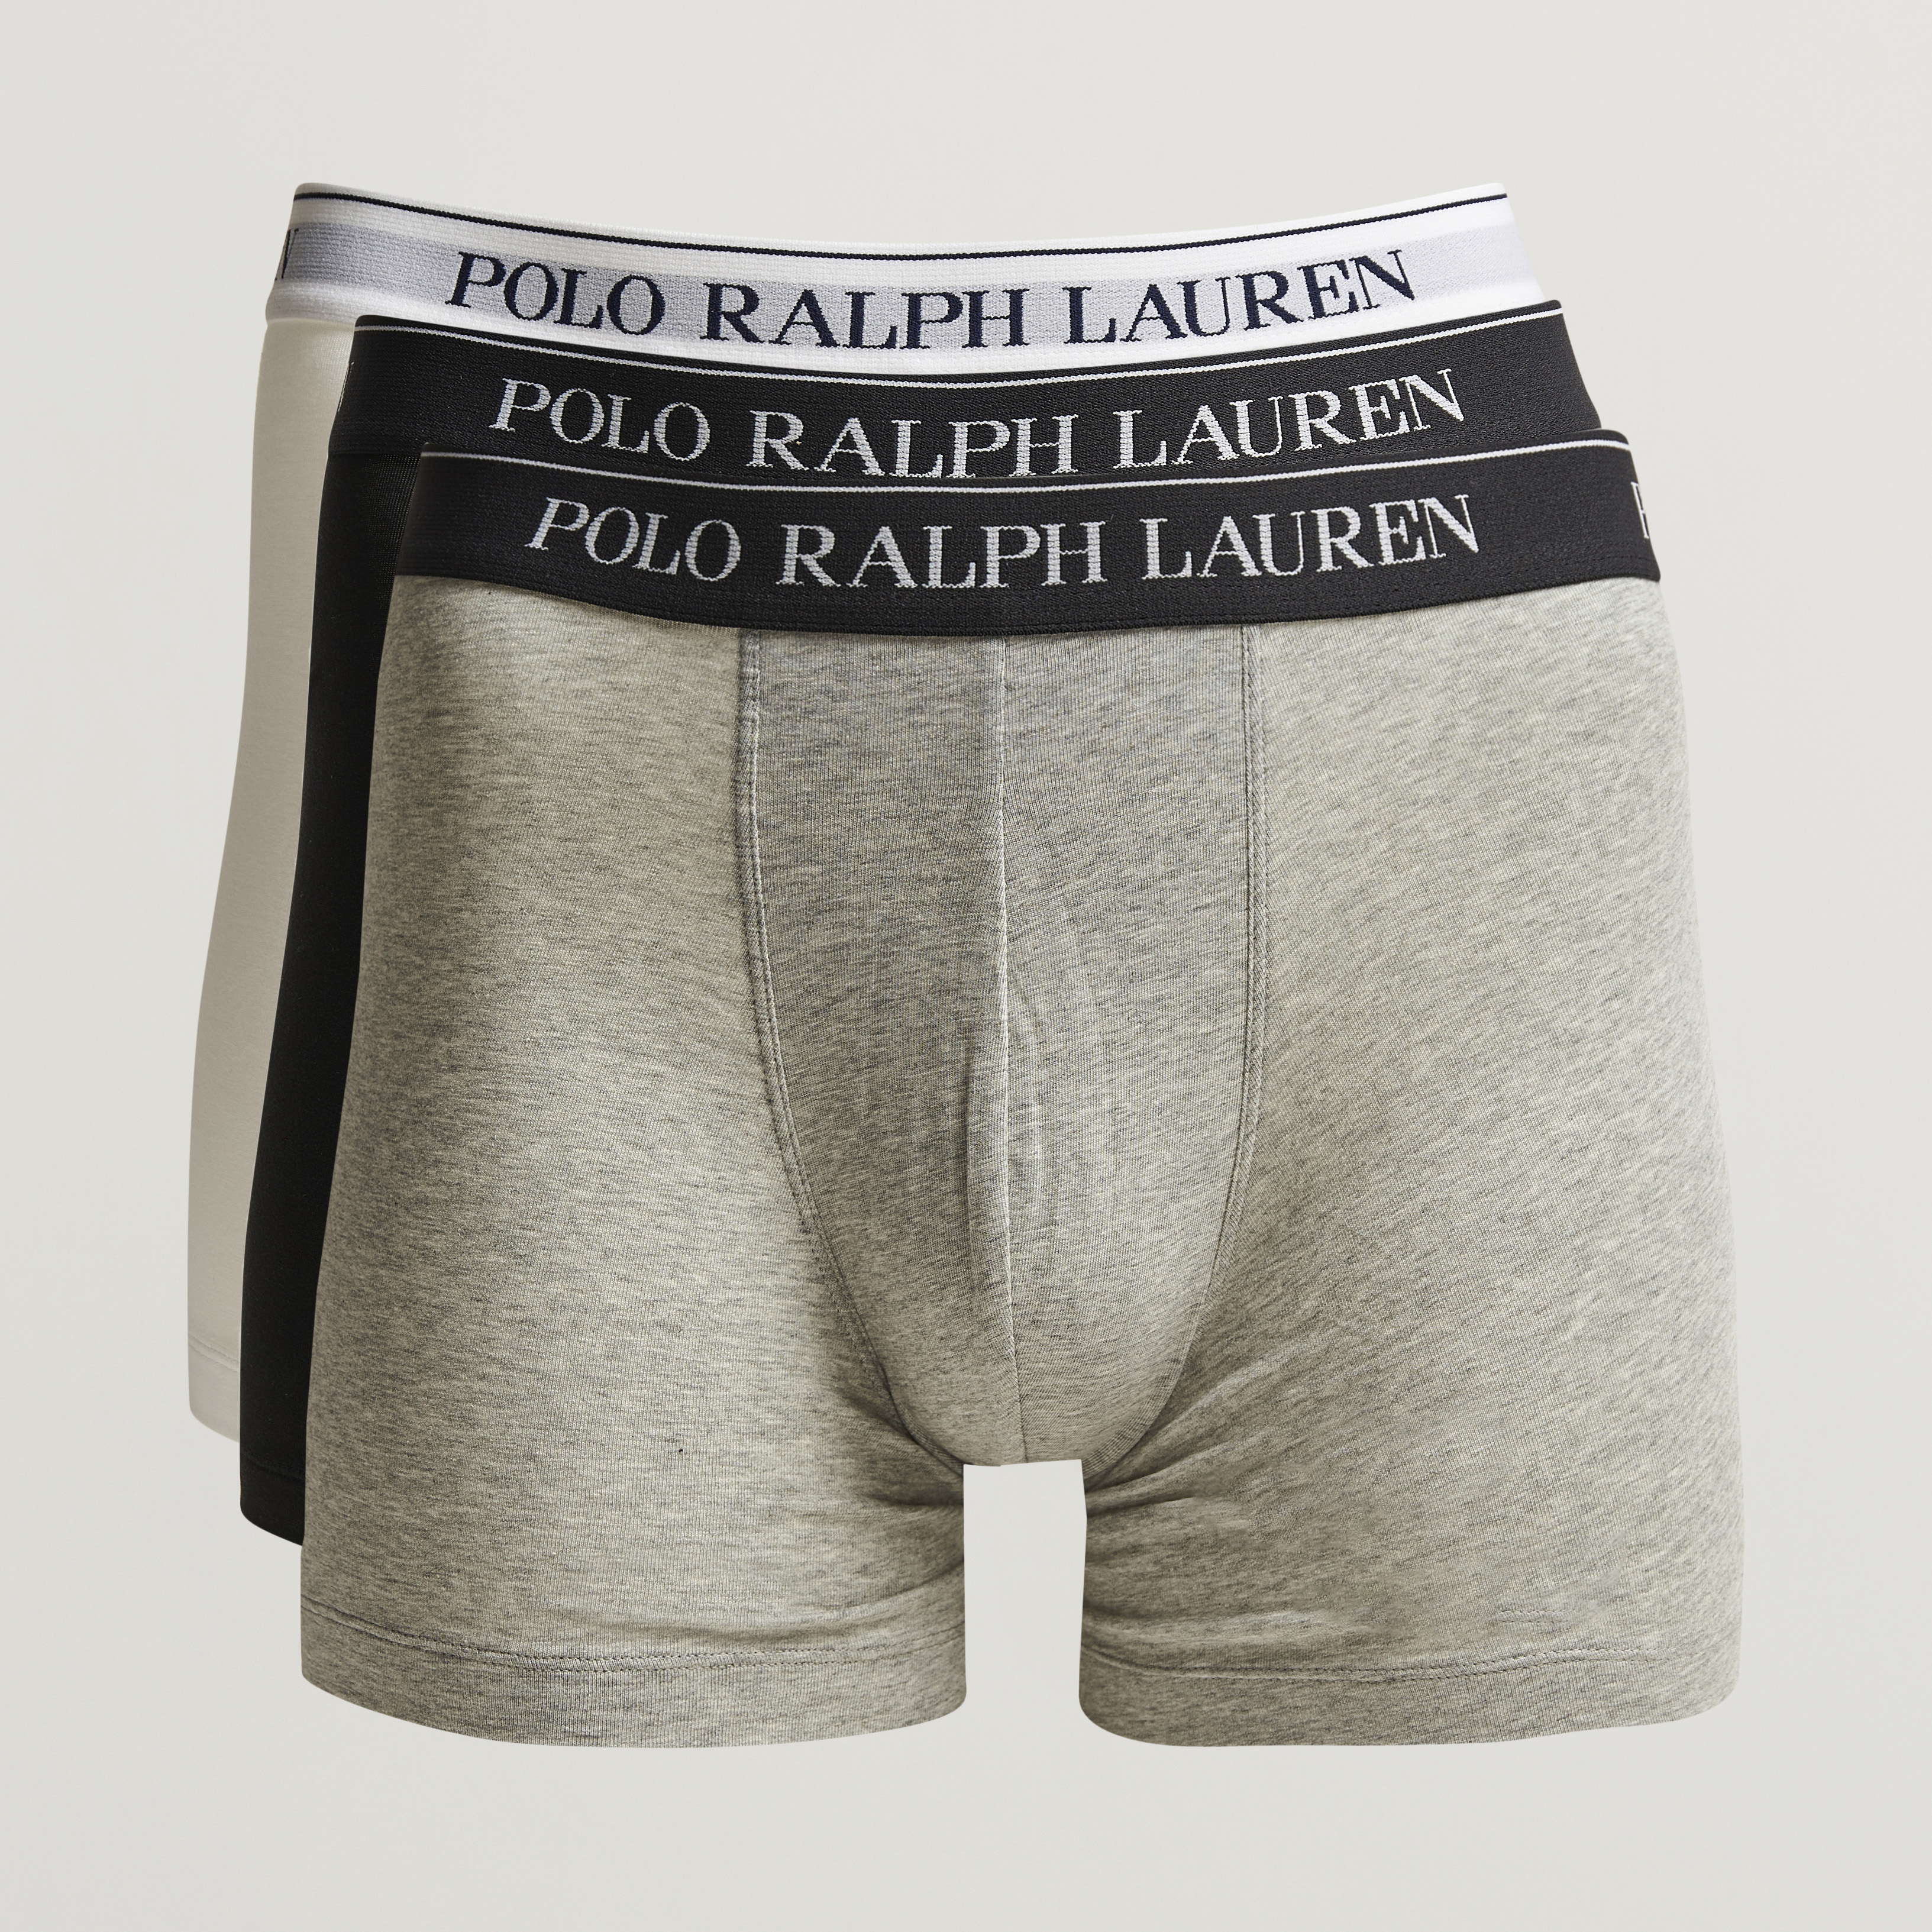 Boxer shorts Polo Ralph Lauren 3Pack Classic Trunk černé